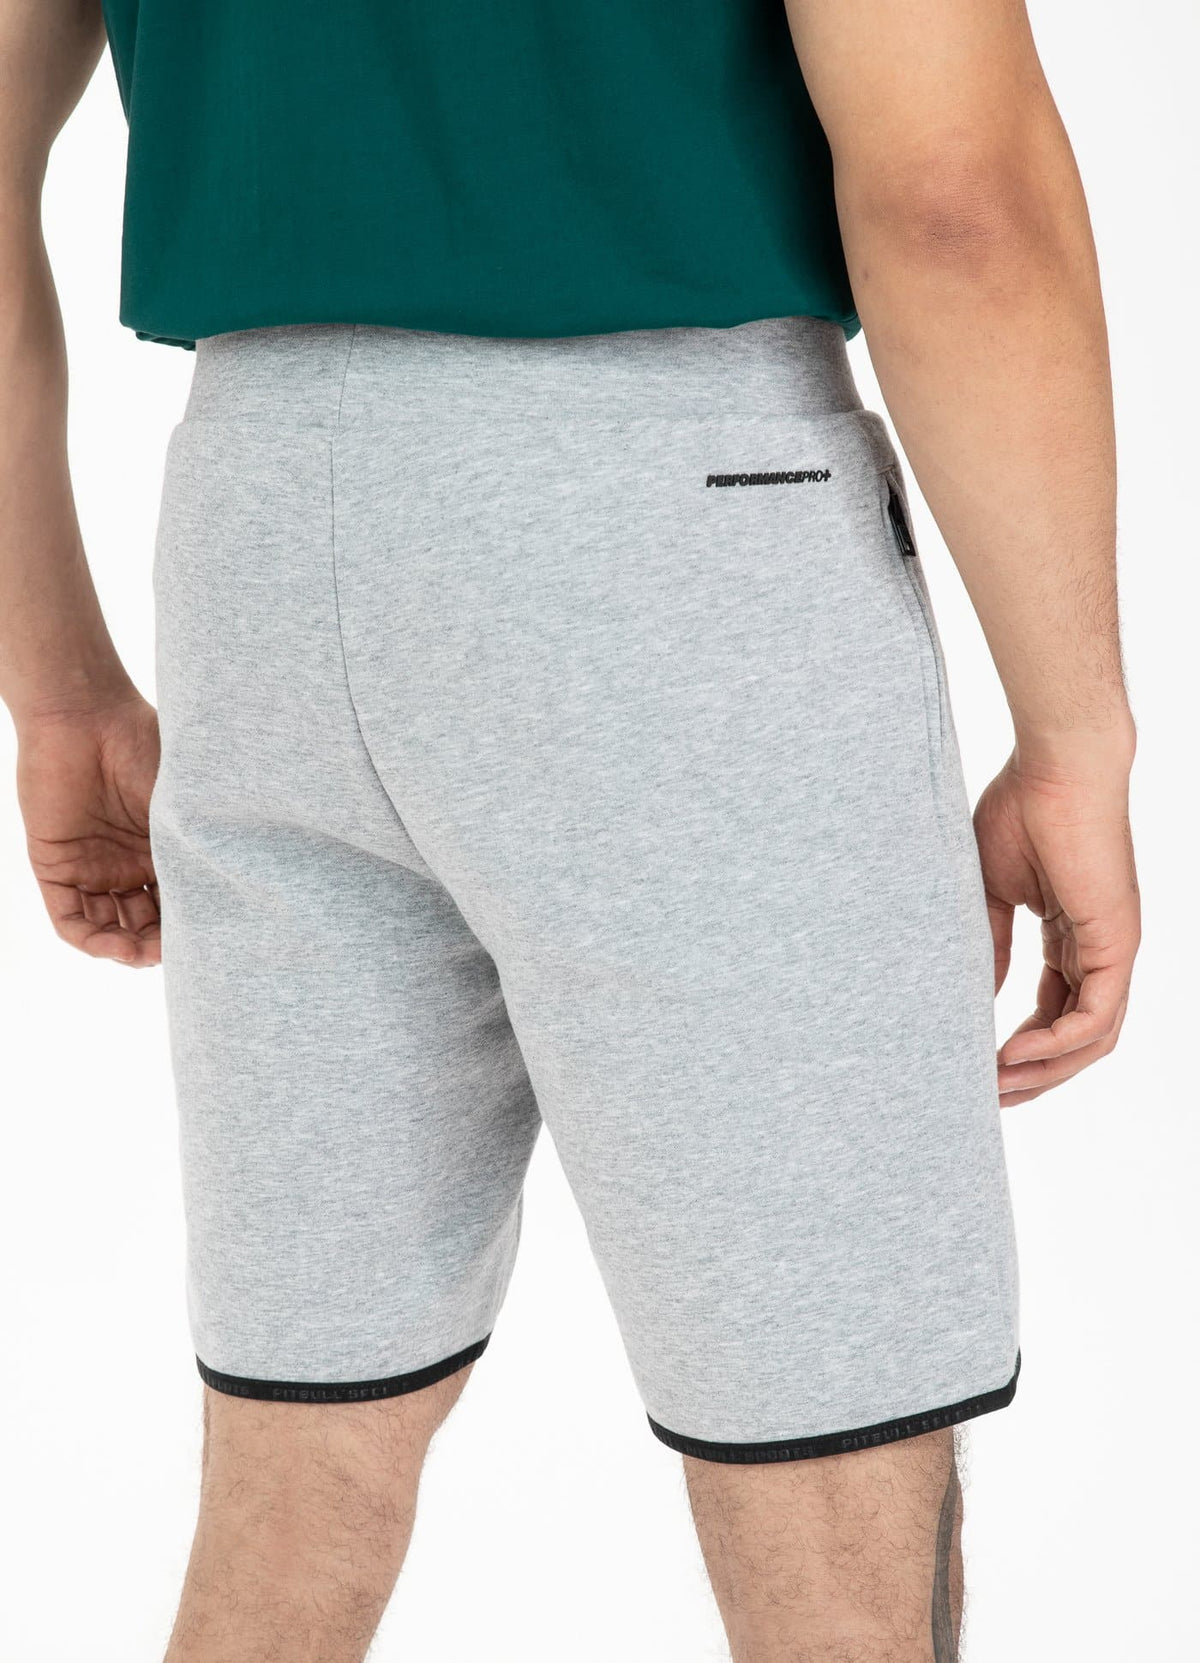 Shorts CLANTON Grey Melange - Pitbull West Coast International Store 